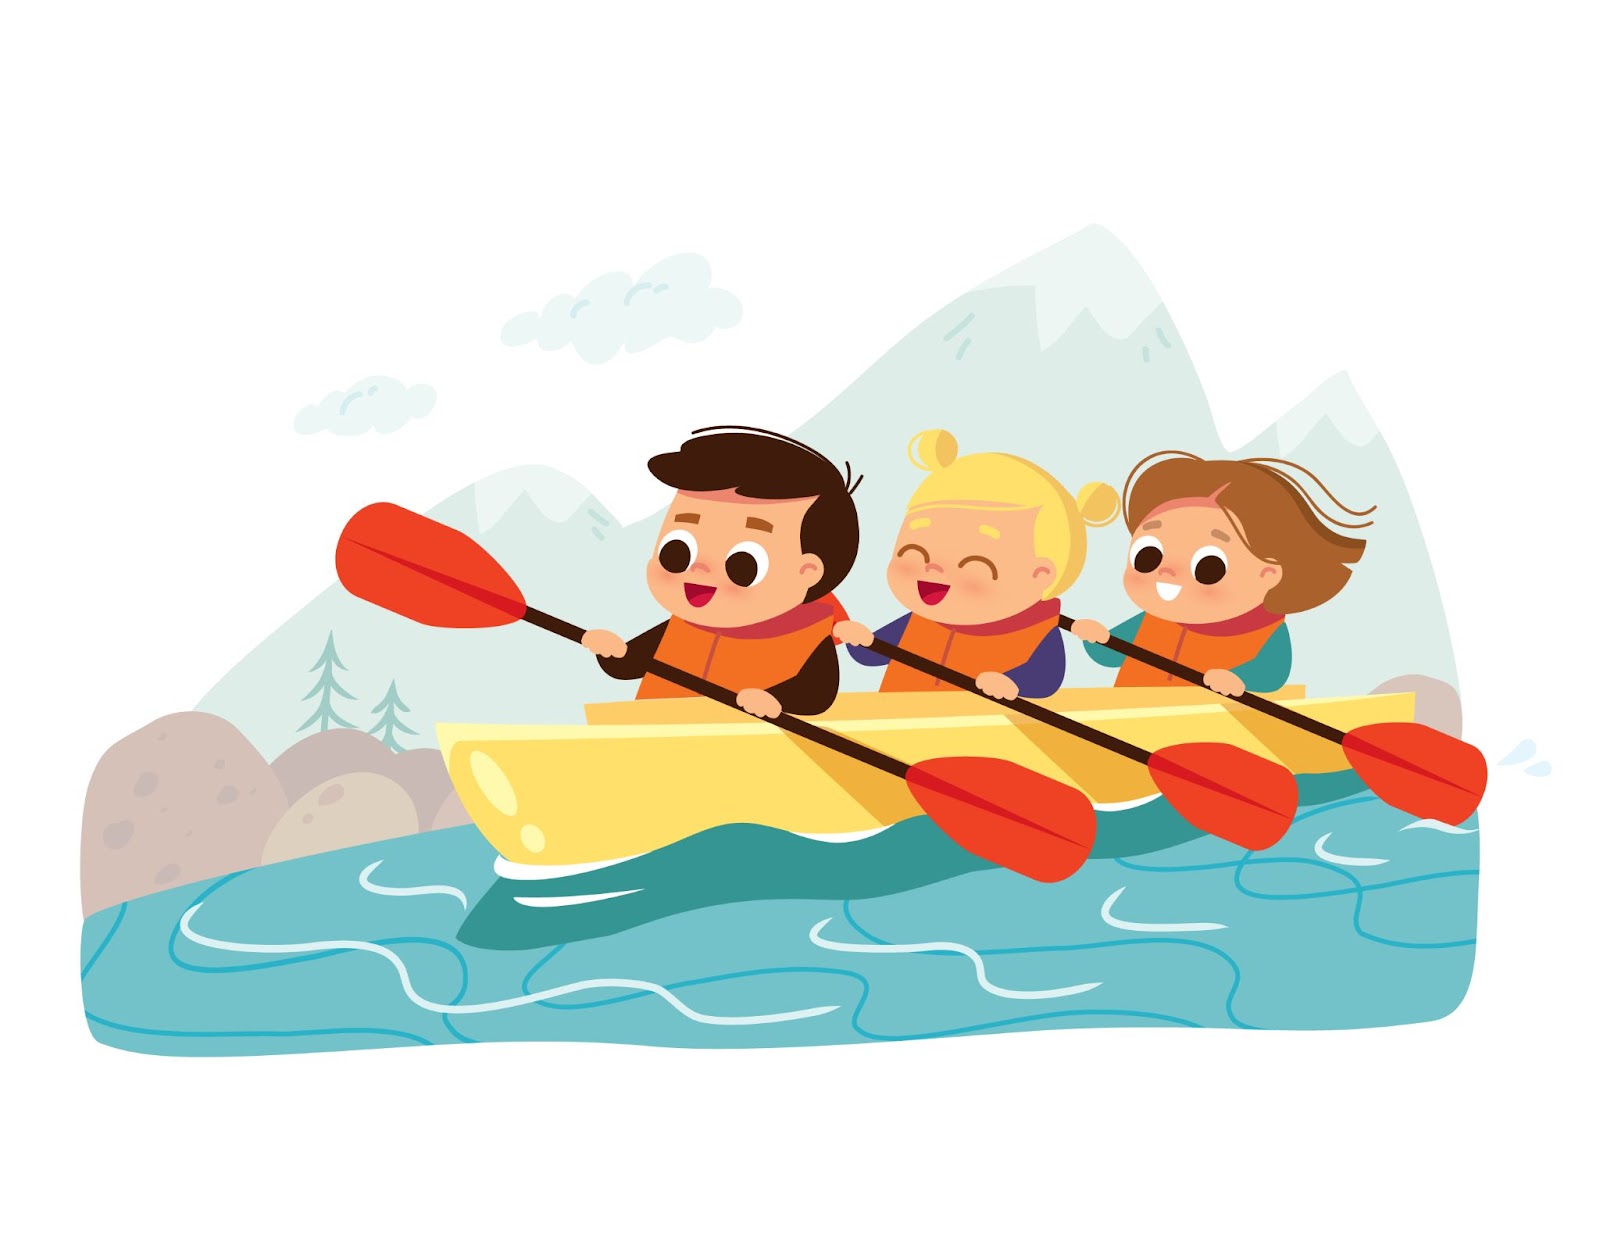 Bambini in canoa. Attività estiva. Scolari in kayak. Illustrazione